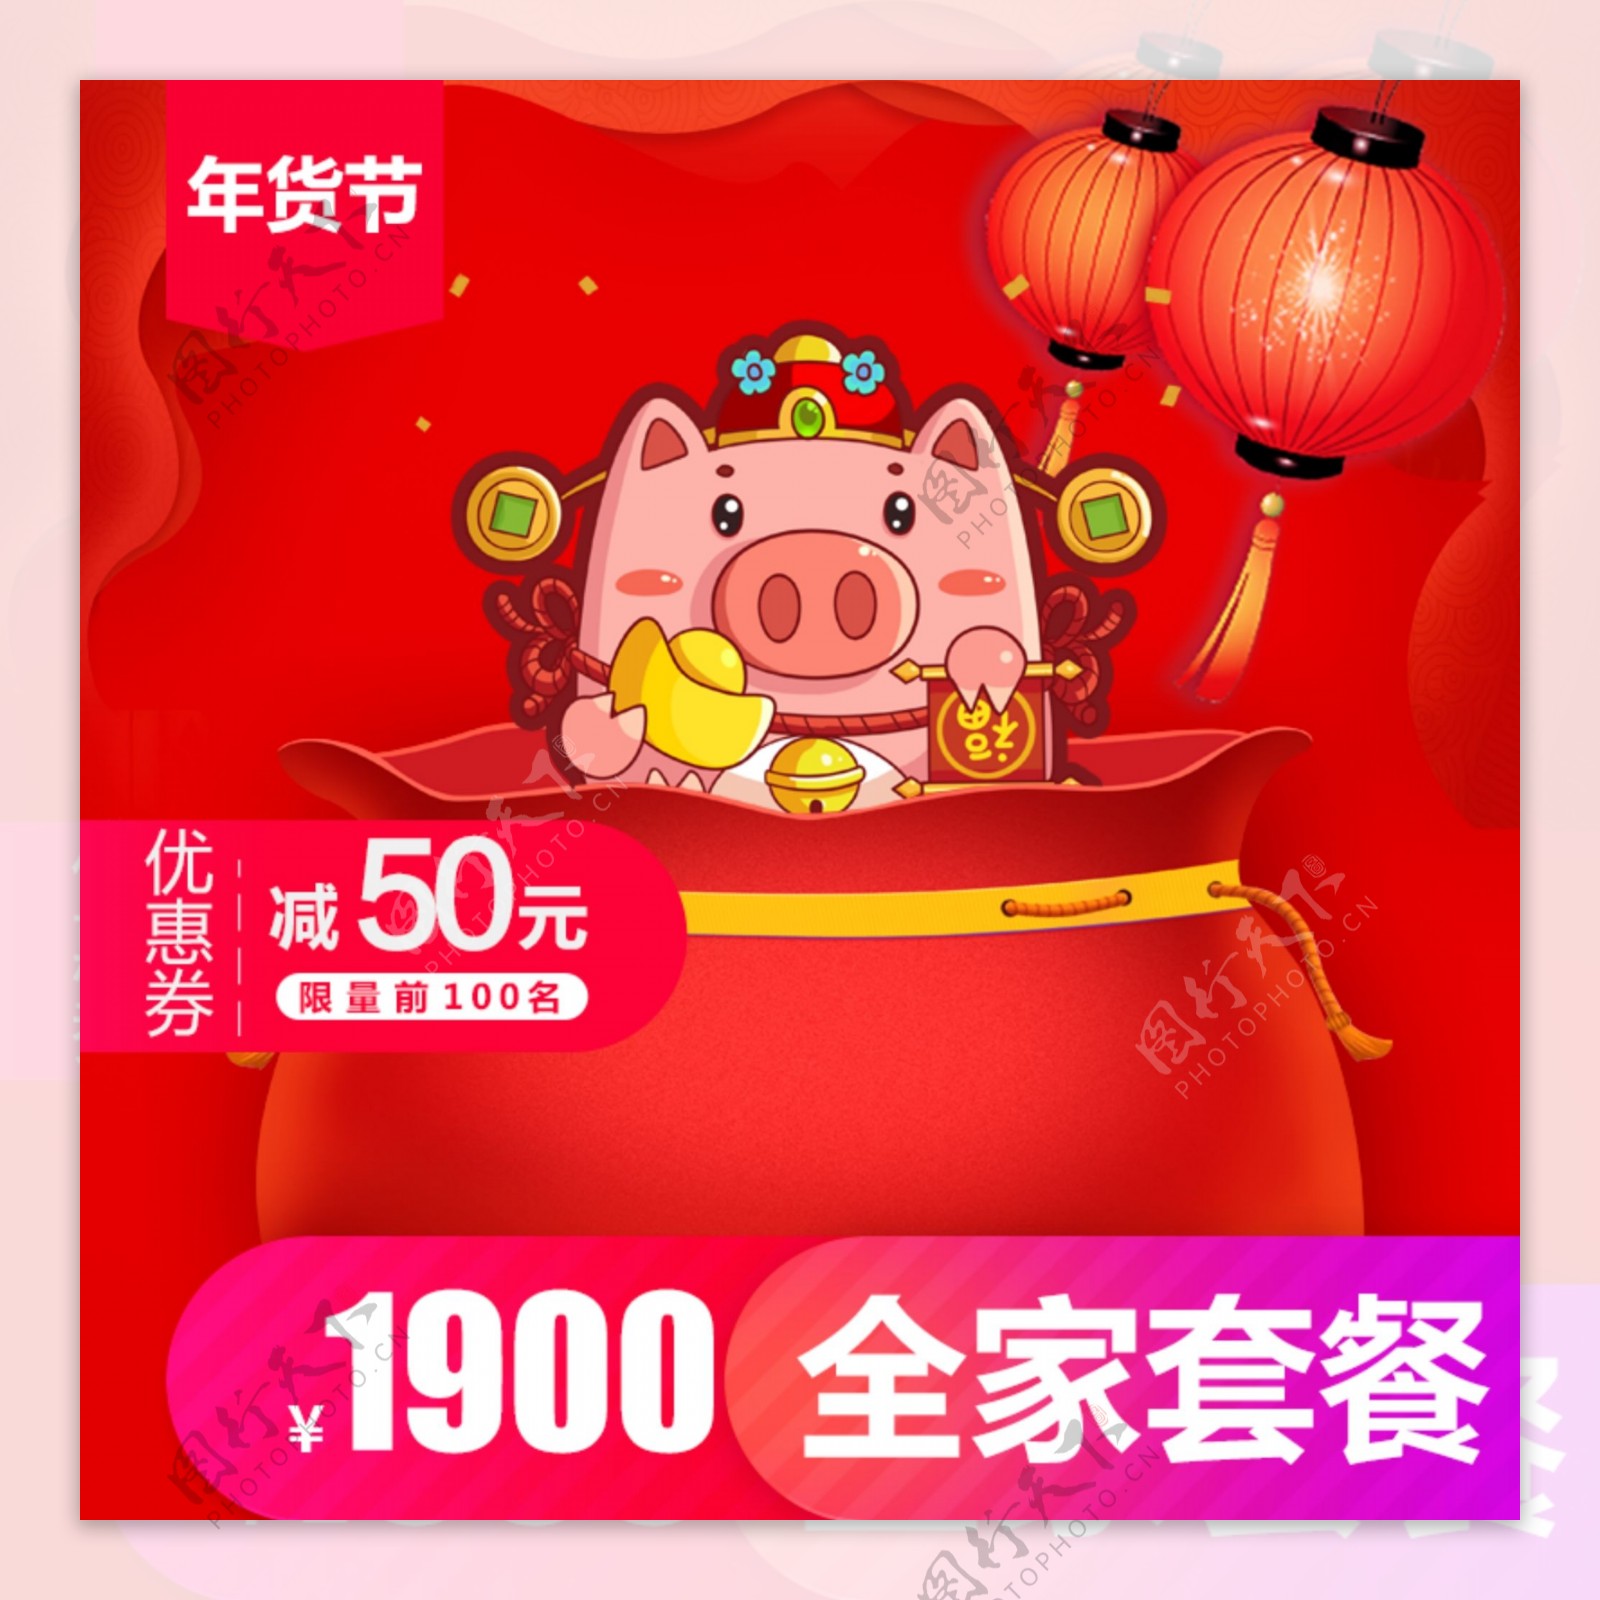 淘宝天猫猪年年货盛典年货节促销主图设计